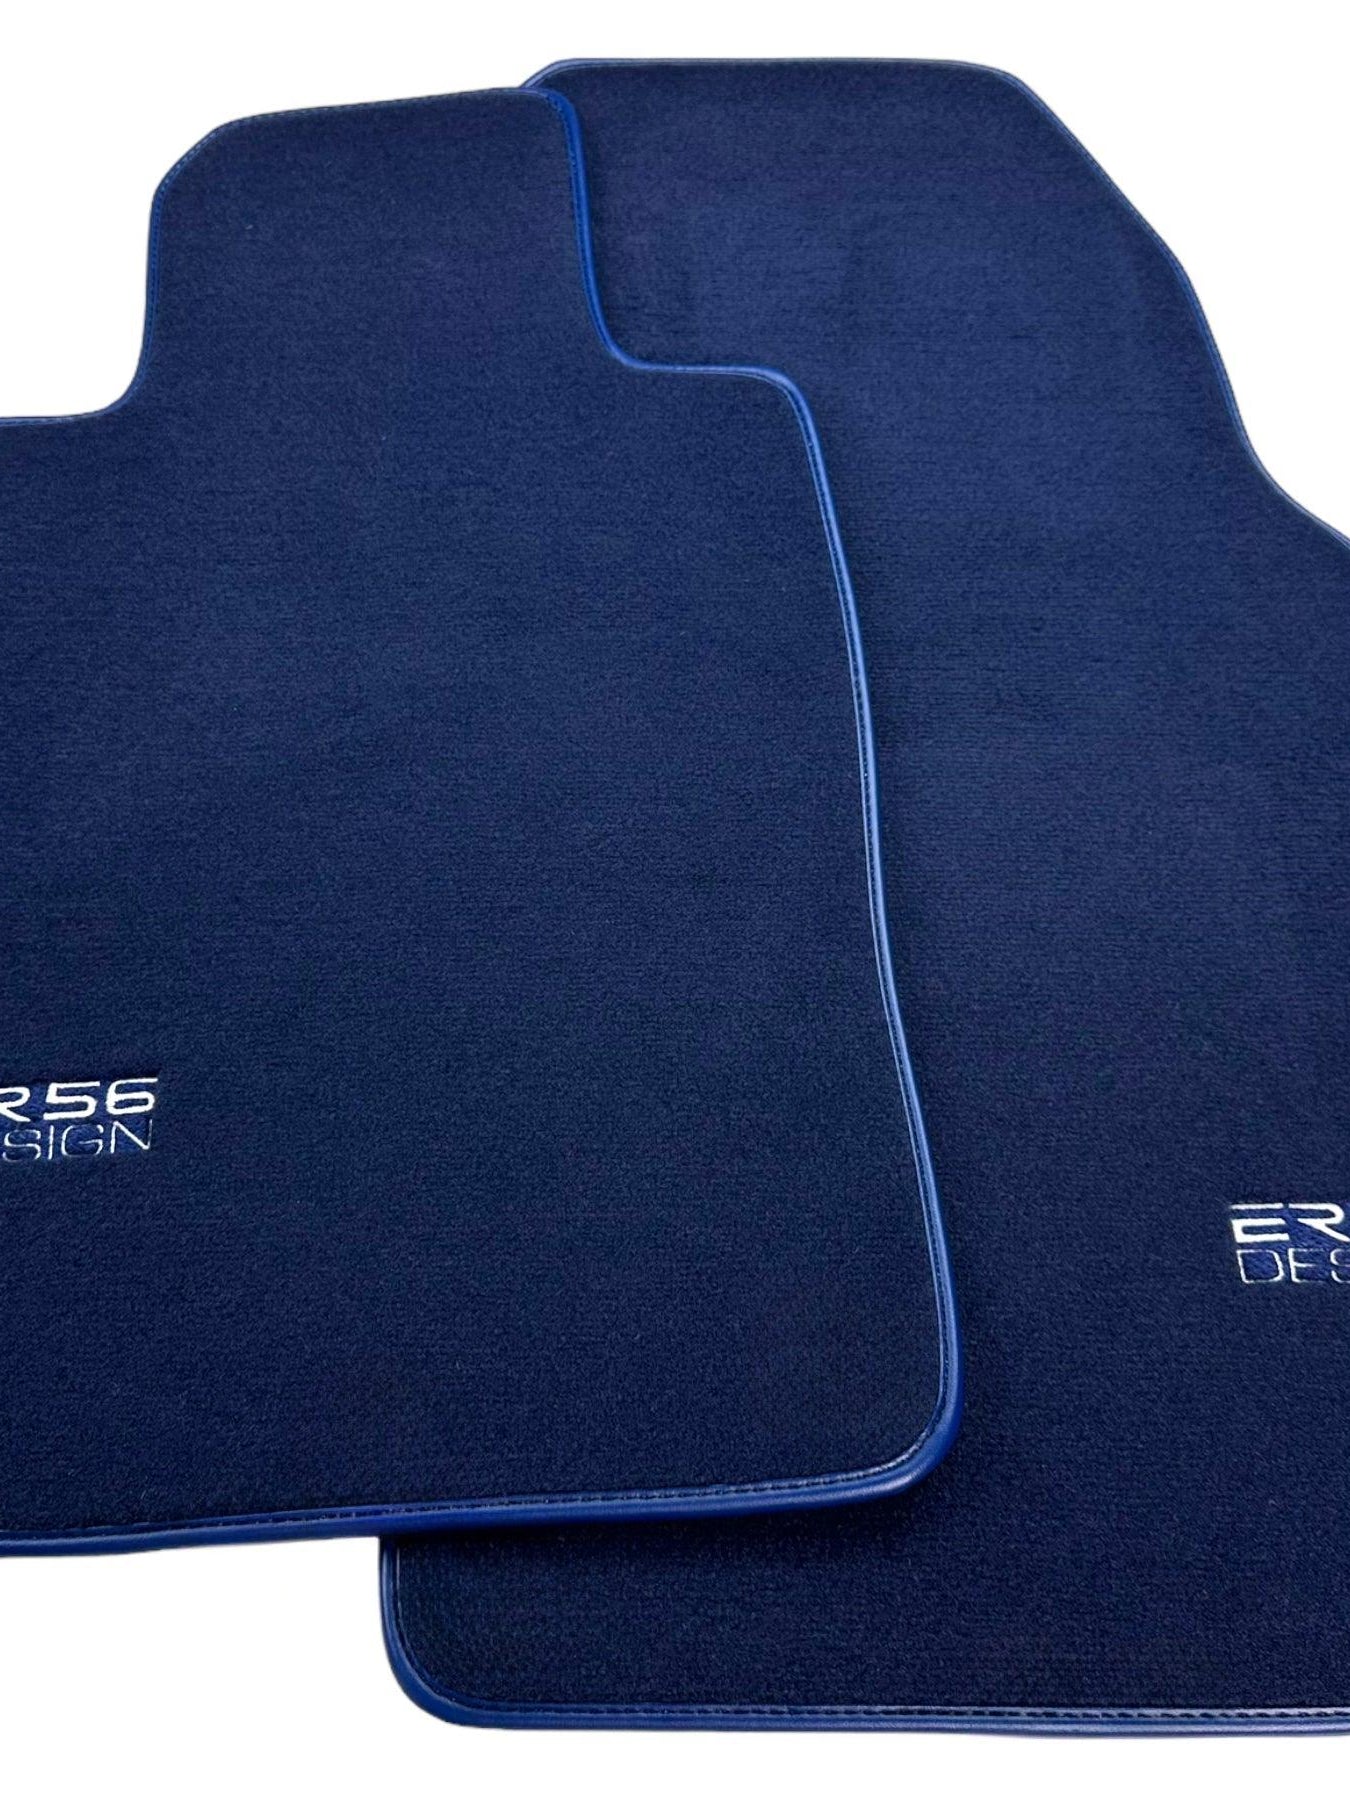 Dark Blue Floor Mats for Porsche 986 Boxster (1996-2004) | Er56 Design - AutoWin